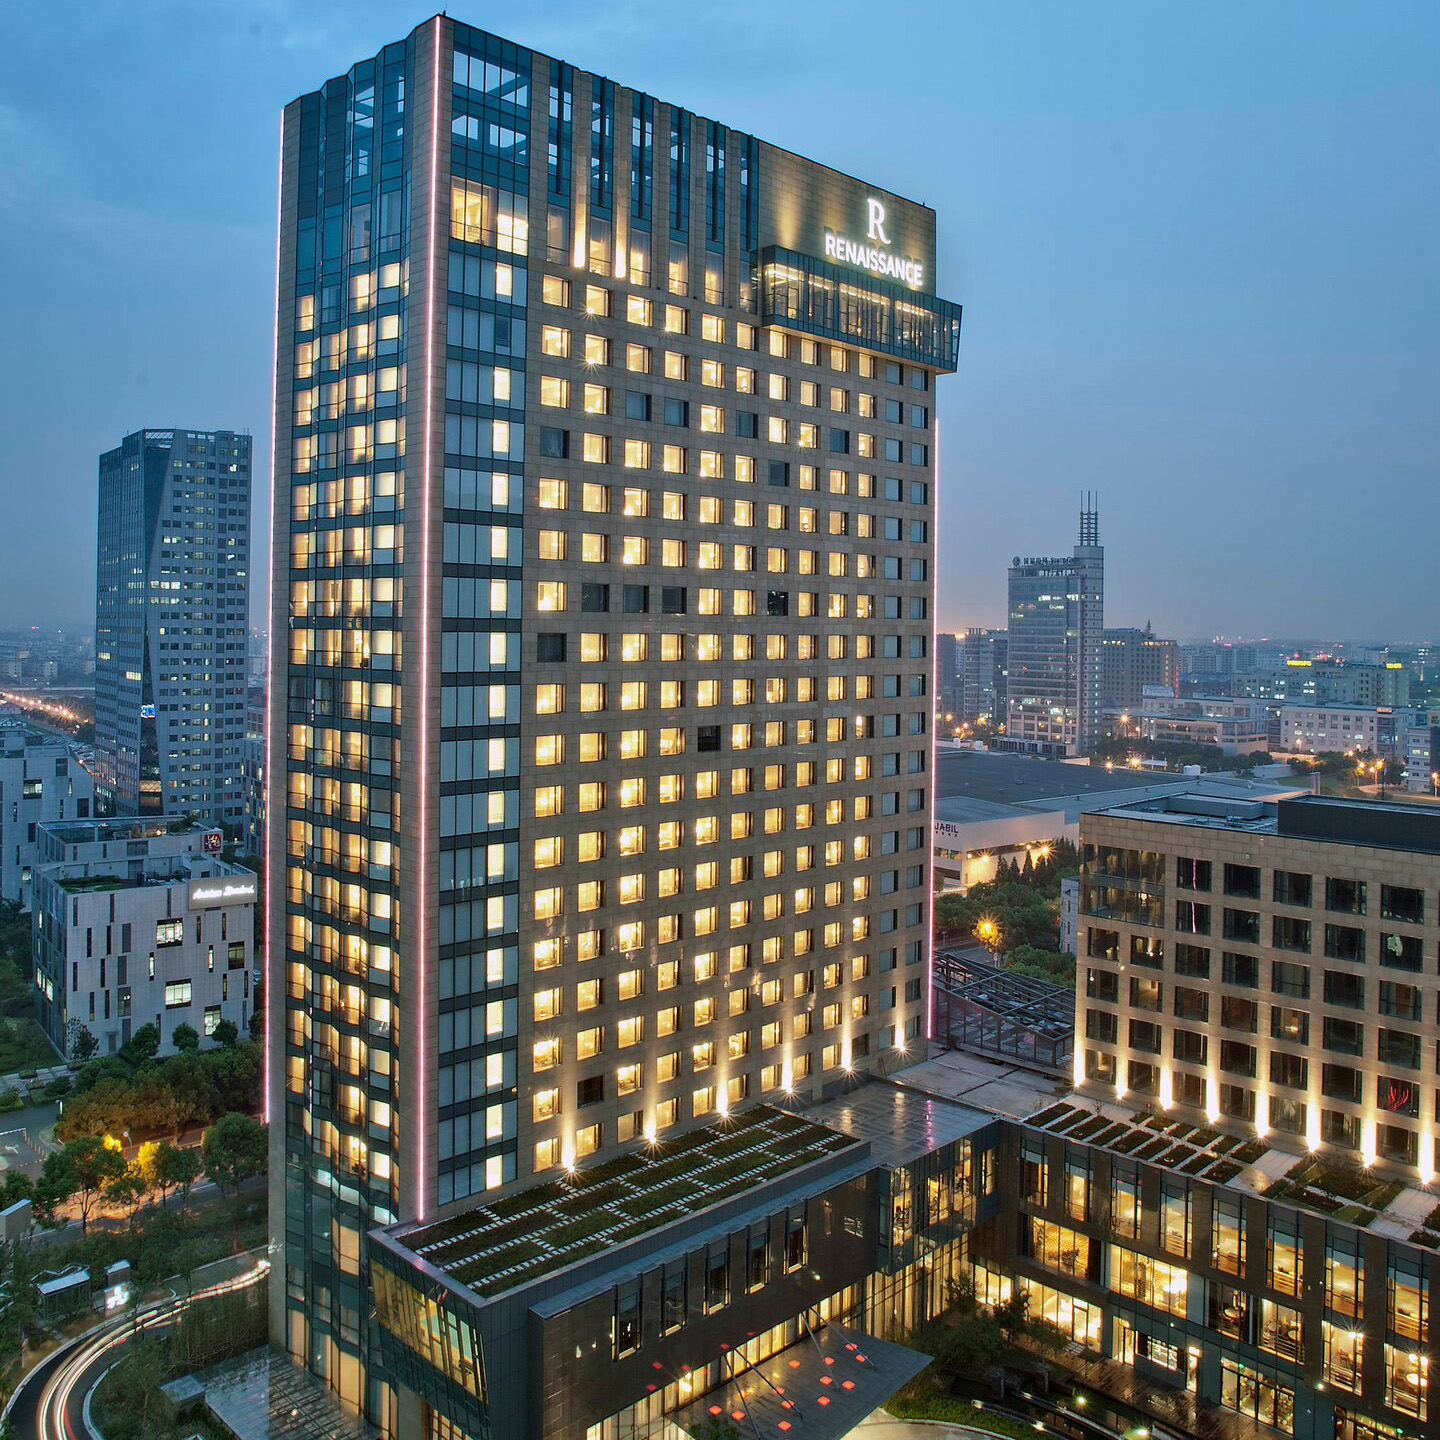 上海扬子江万丽大酒店 (Renaissance Shanghai Yangtze Hotel)_豪华型_预订优惠价格_地址位置_联系方式